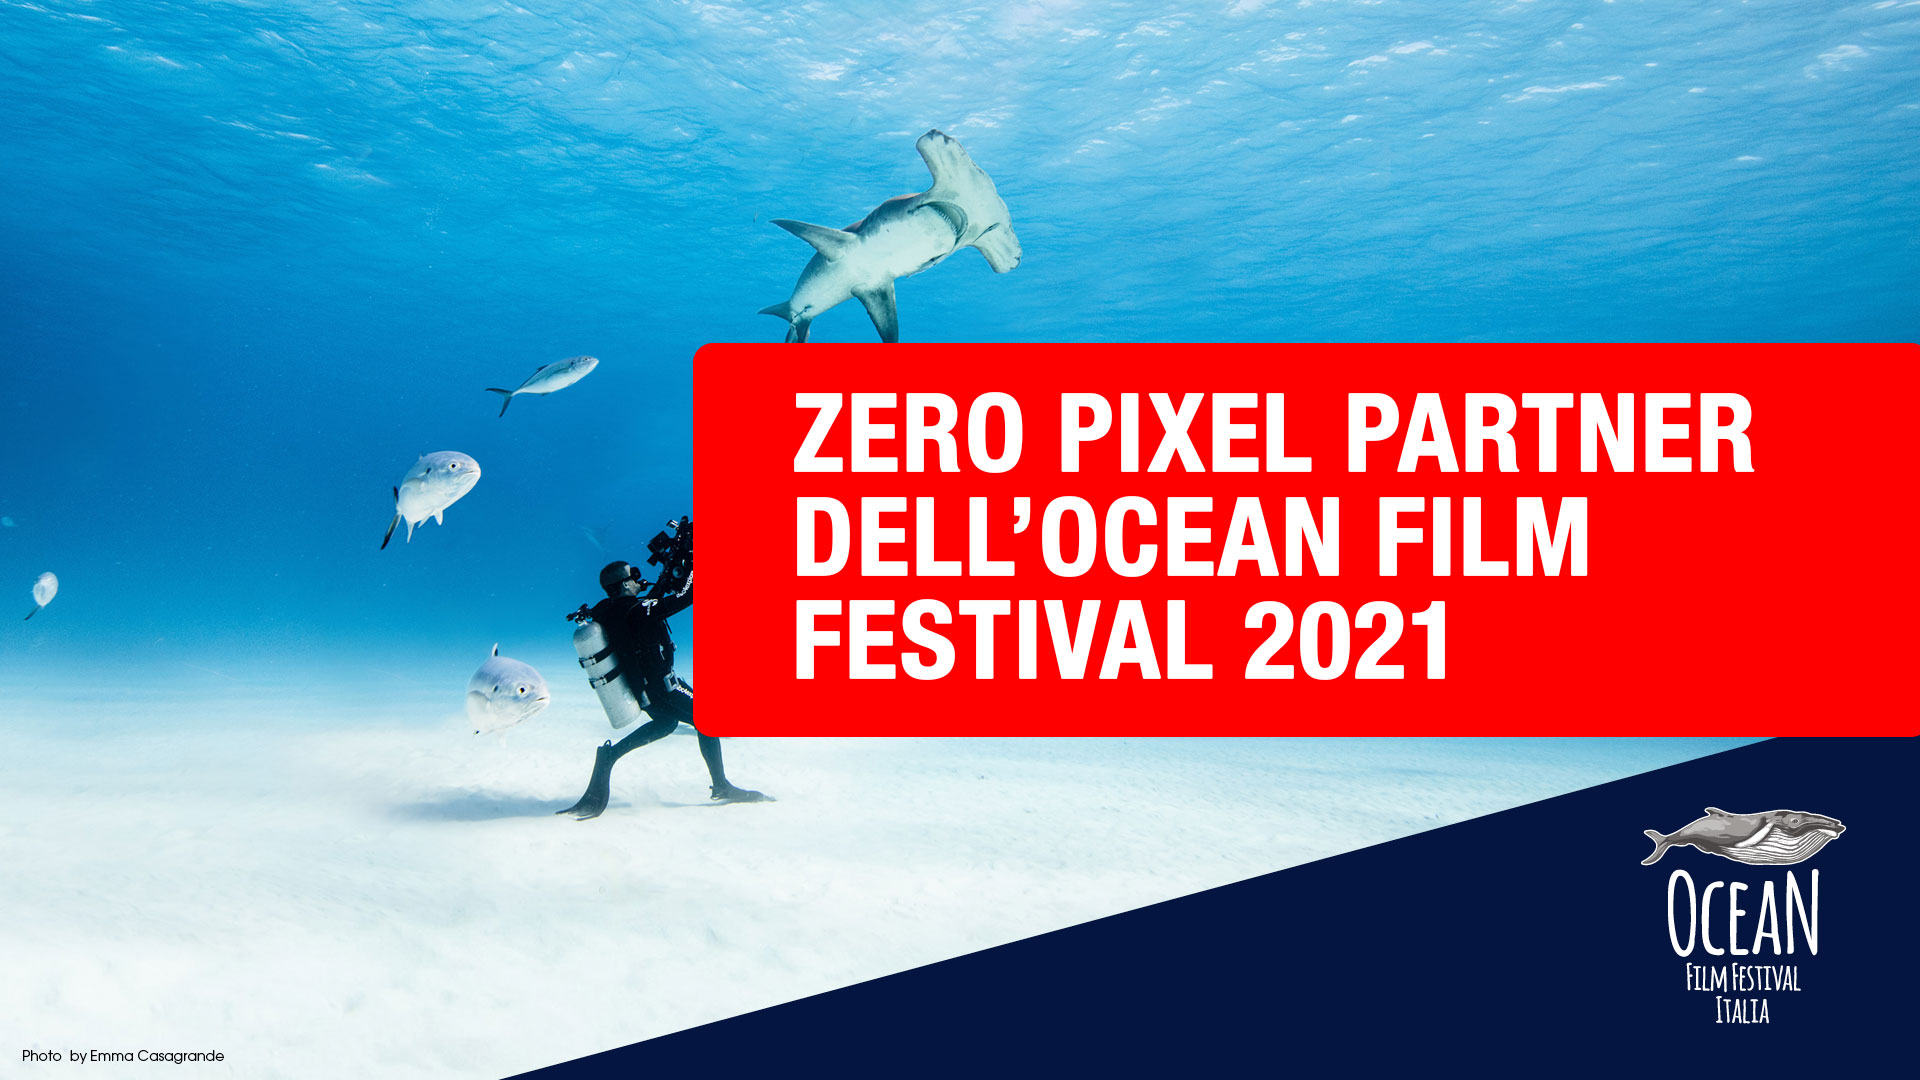 ocean film festival 2021 zero pixel